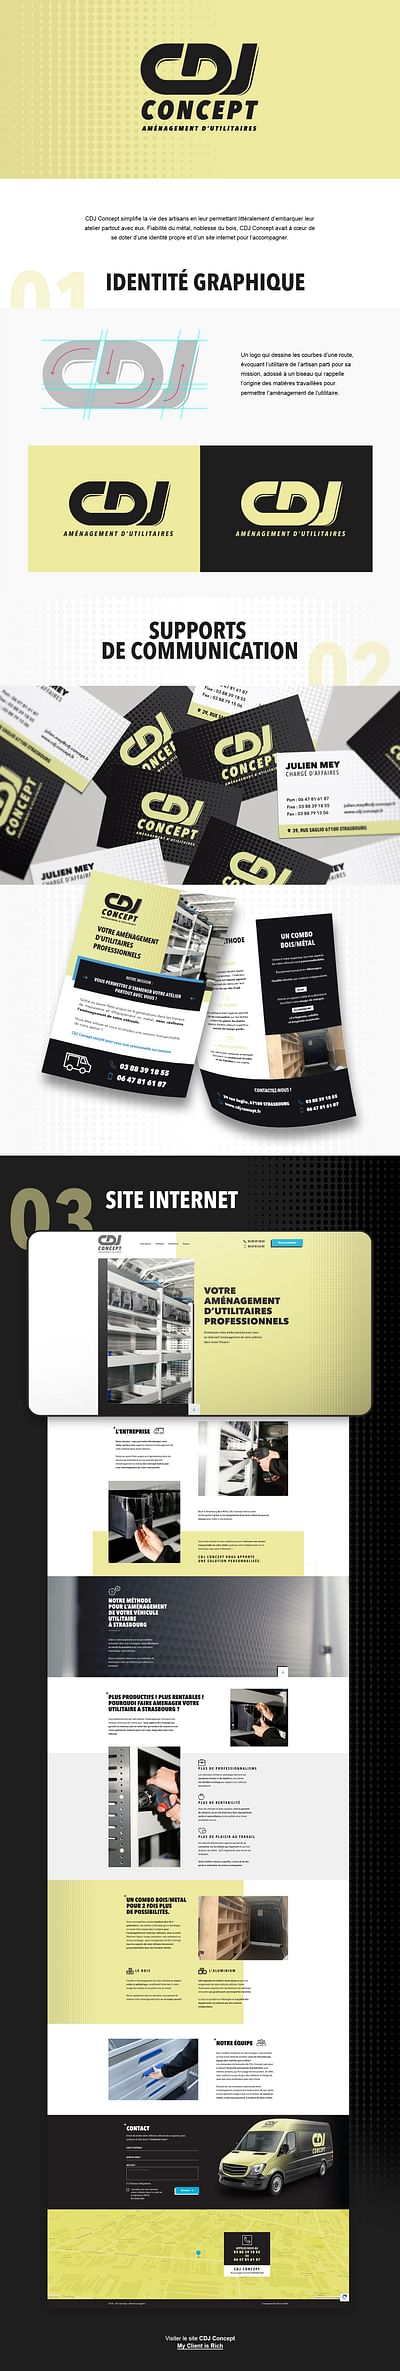 CDJ Concept : DA, Site Web et Webmarketing - Photography